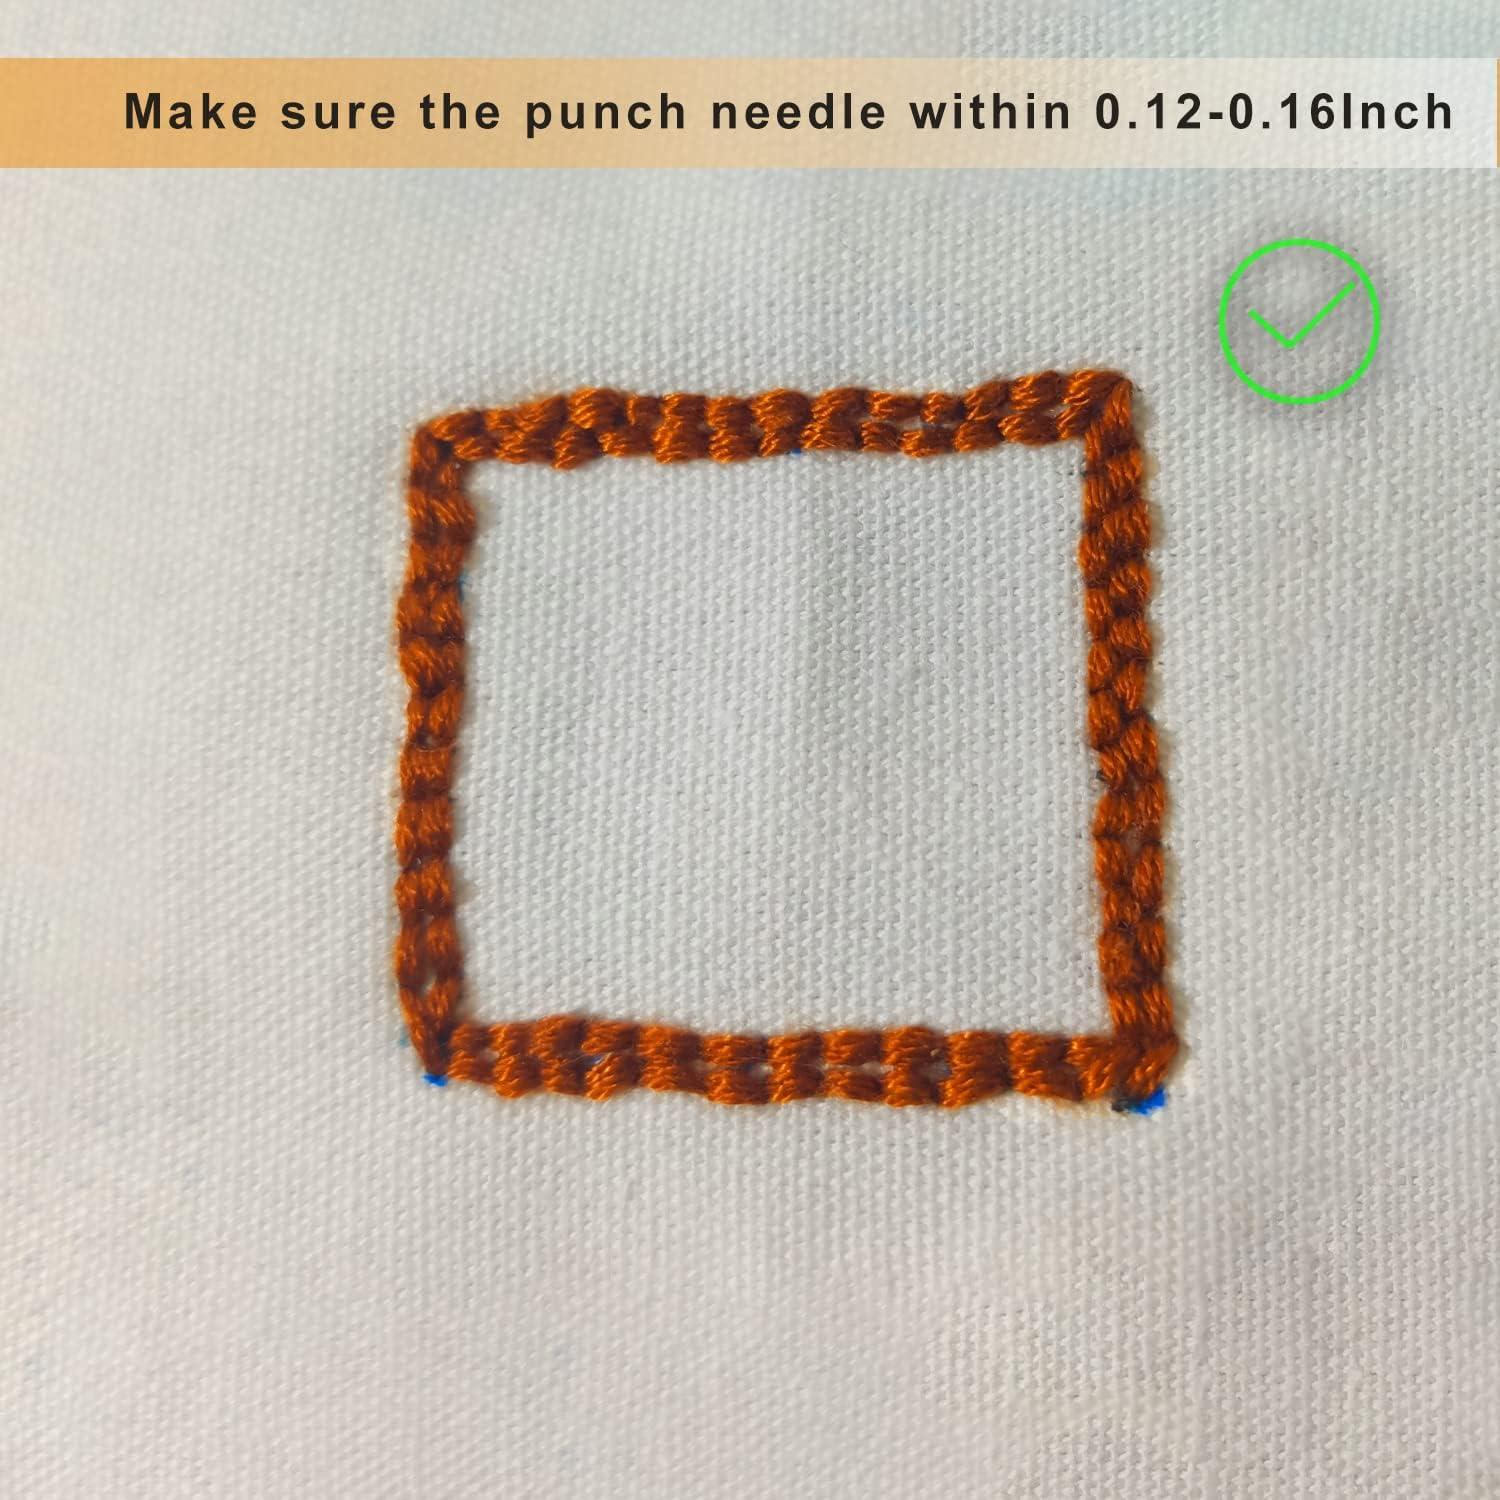 Punch Needle Kit Punch Needle Kits Adults Beginner Punch Needle